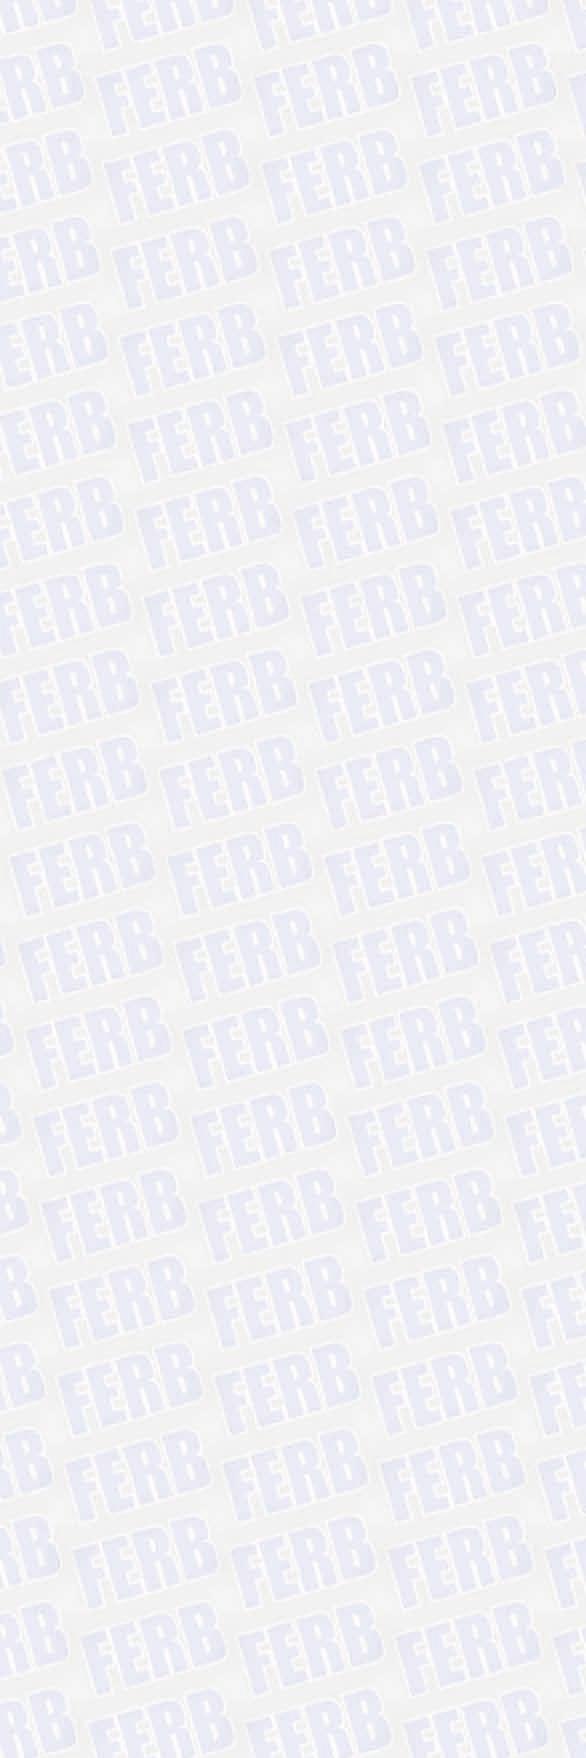 FERB lavora in ambienti certificati ISO 9001 e dispone di una struttura di progettazione interna che permette la